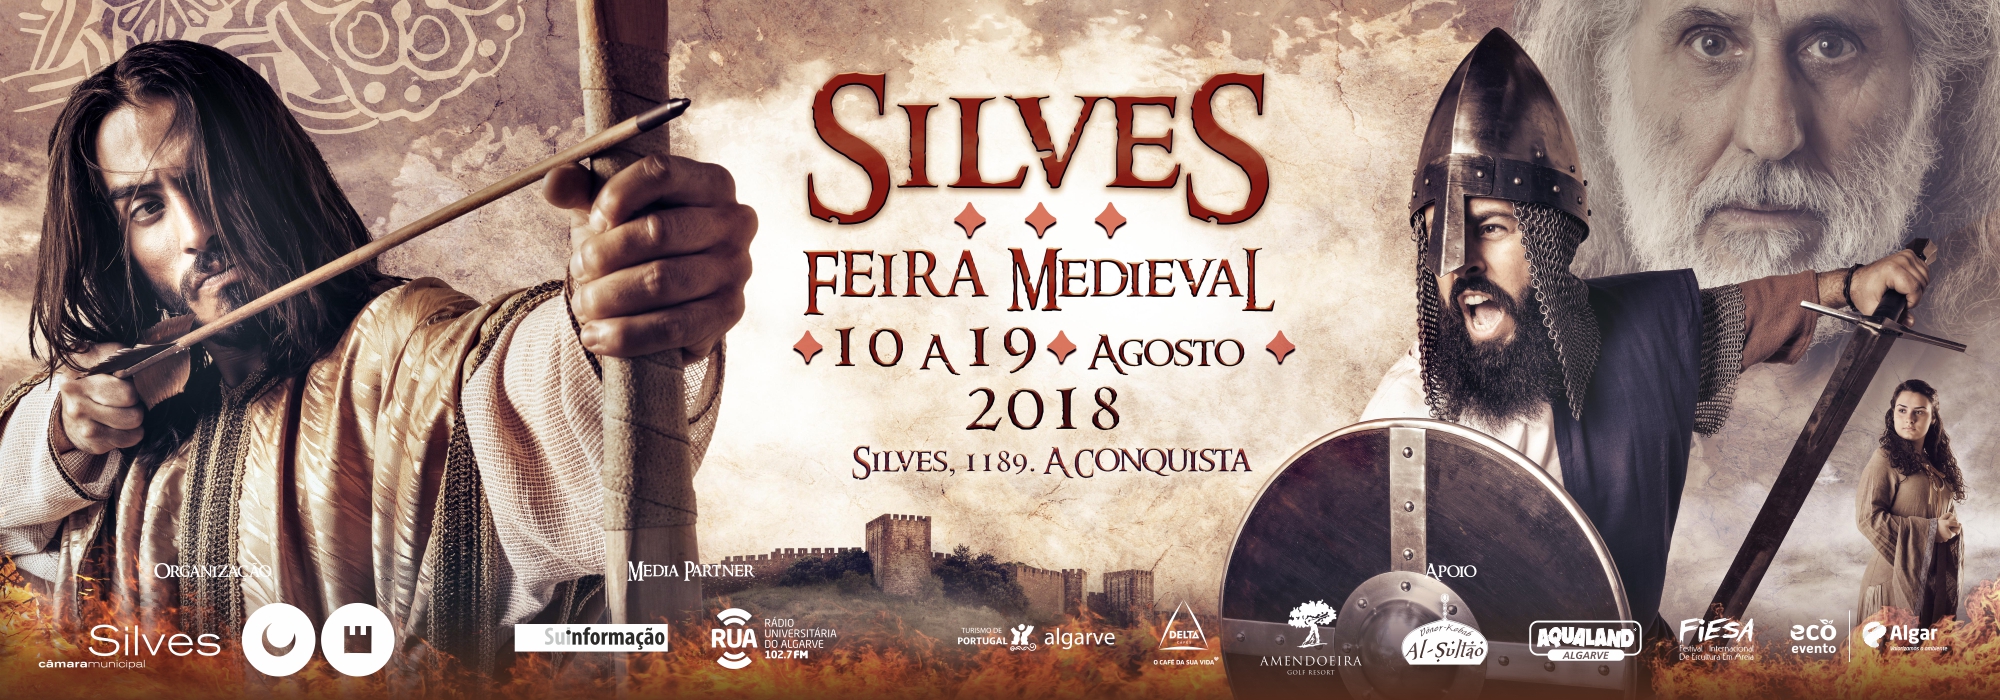 Silves volta a ser capital do Reino do Algarve